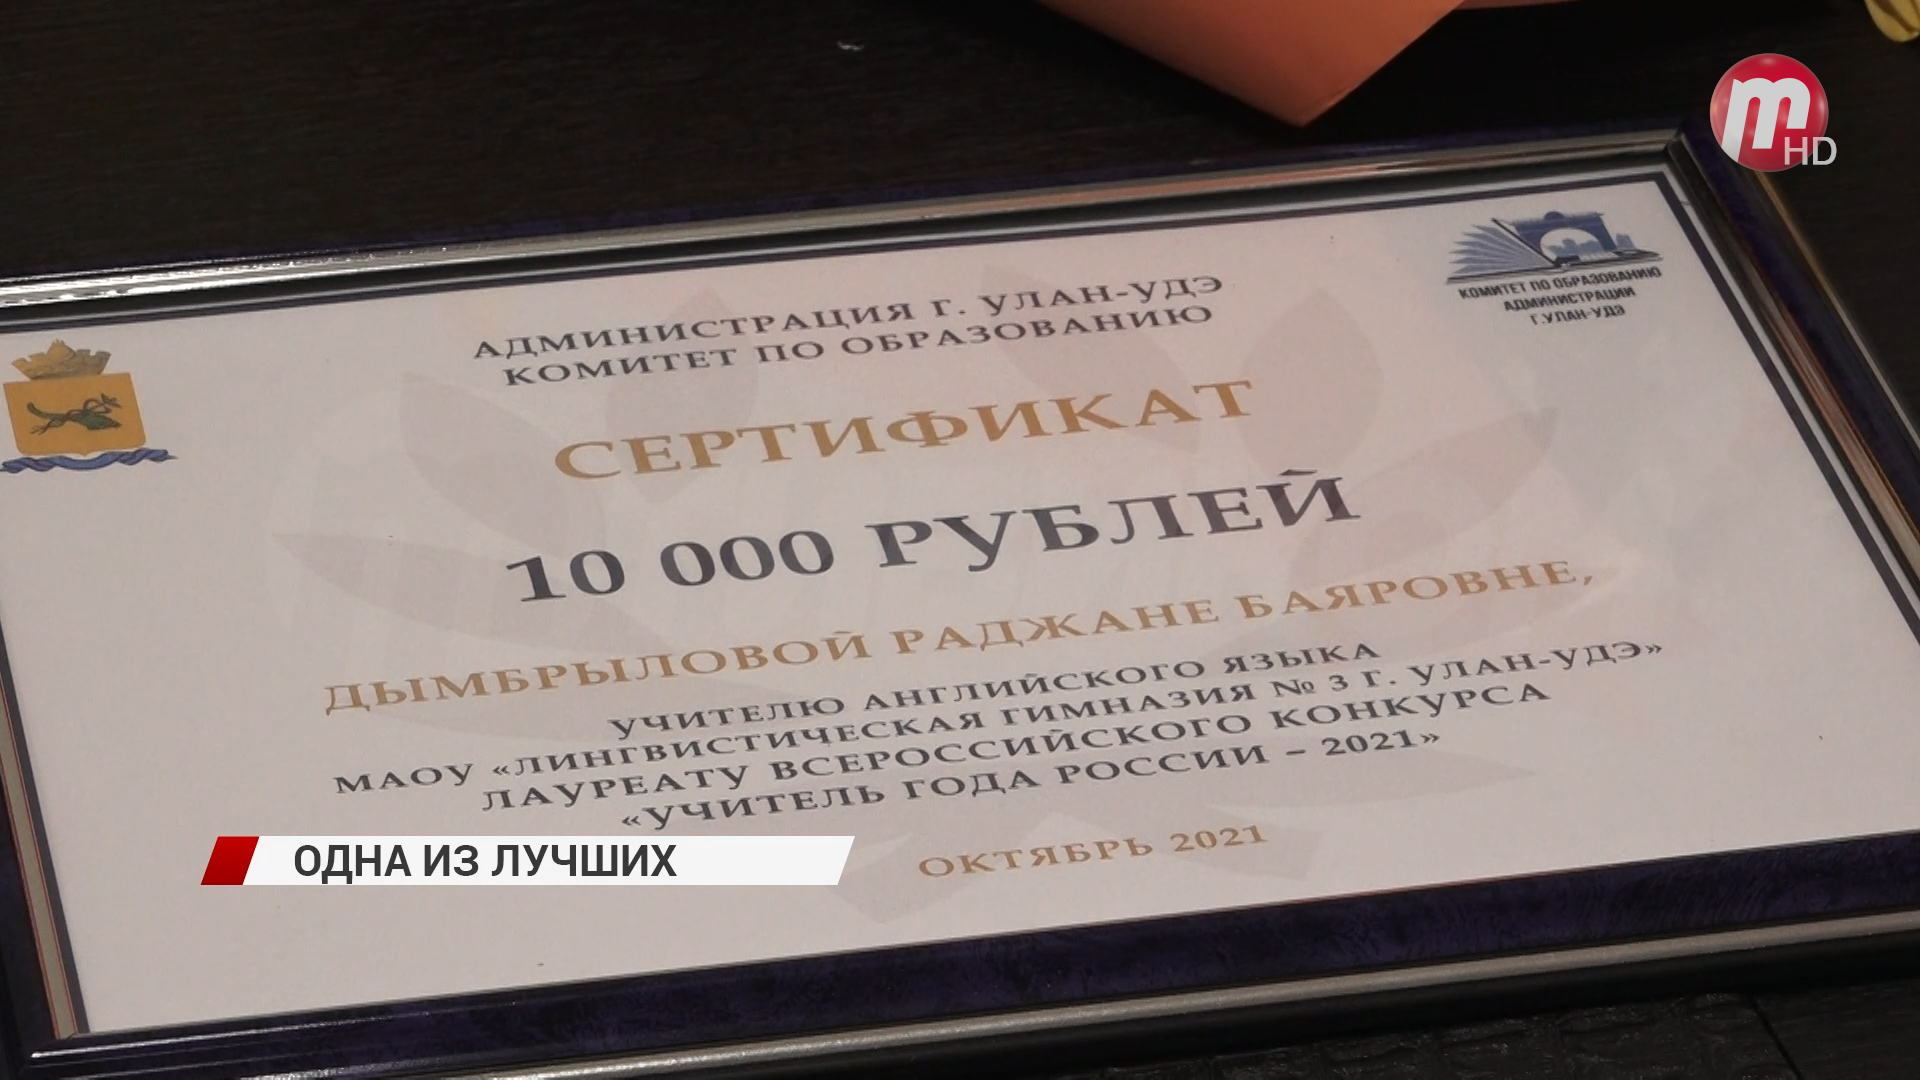 В Улан-Удэ чествовали лауреата конкурса «Учитель года России»